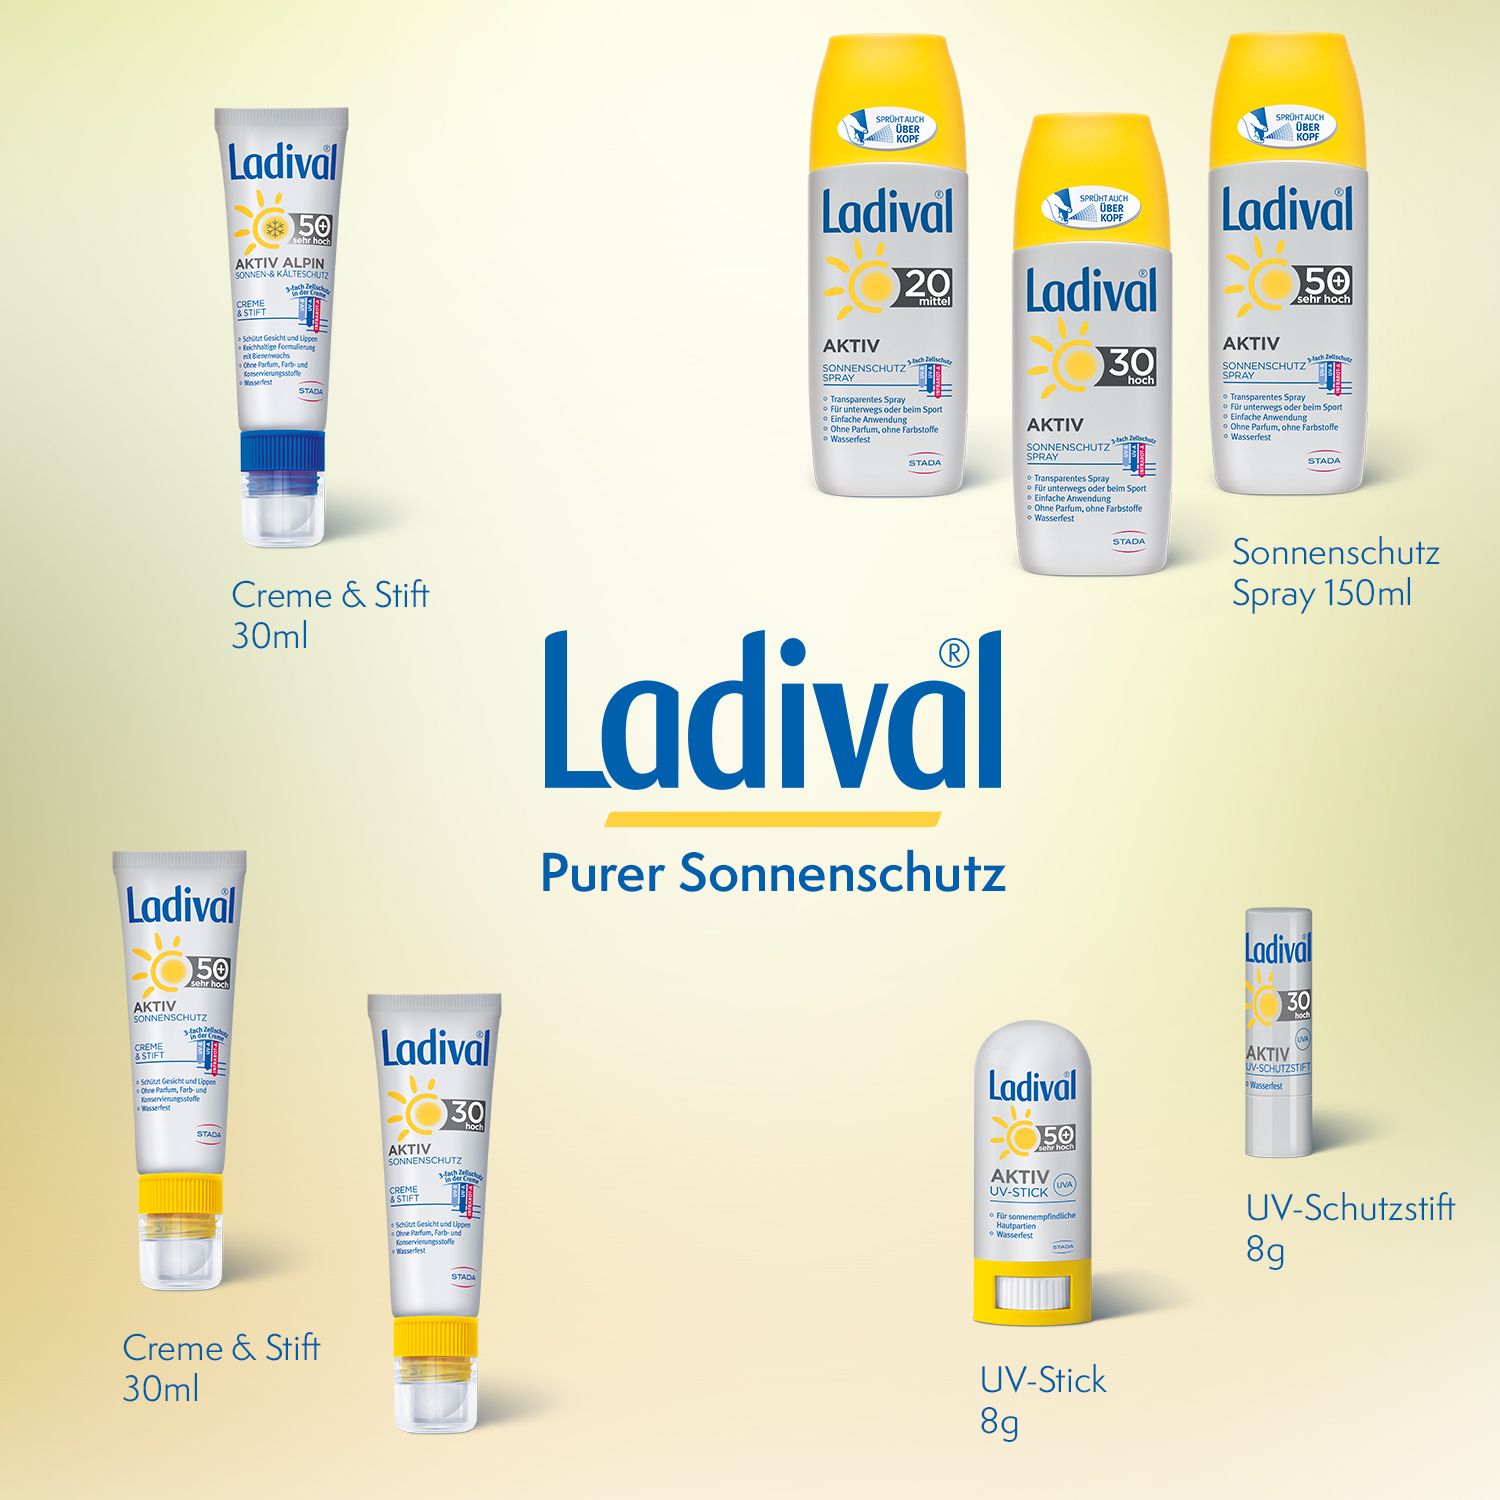 Ladival® Aktiv Sonnenschutzspray LSF 20